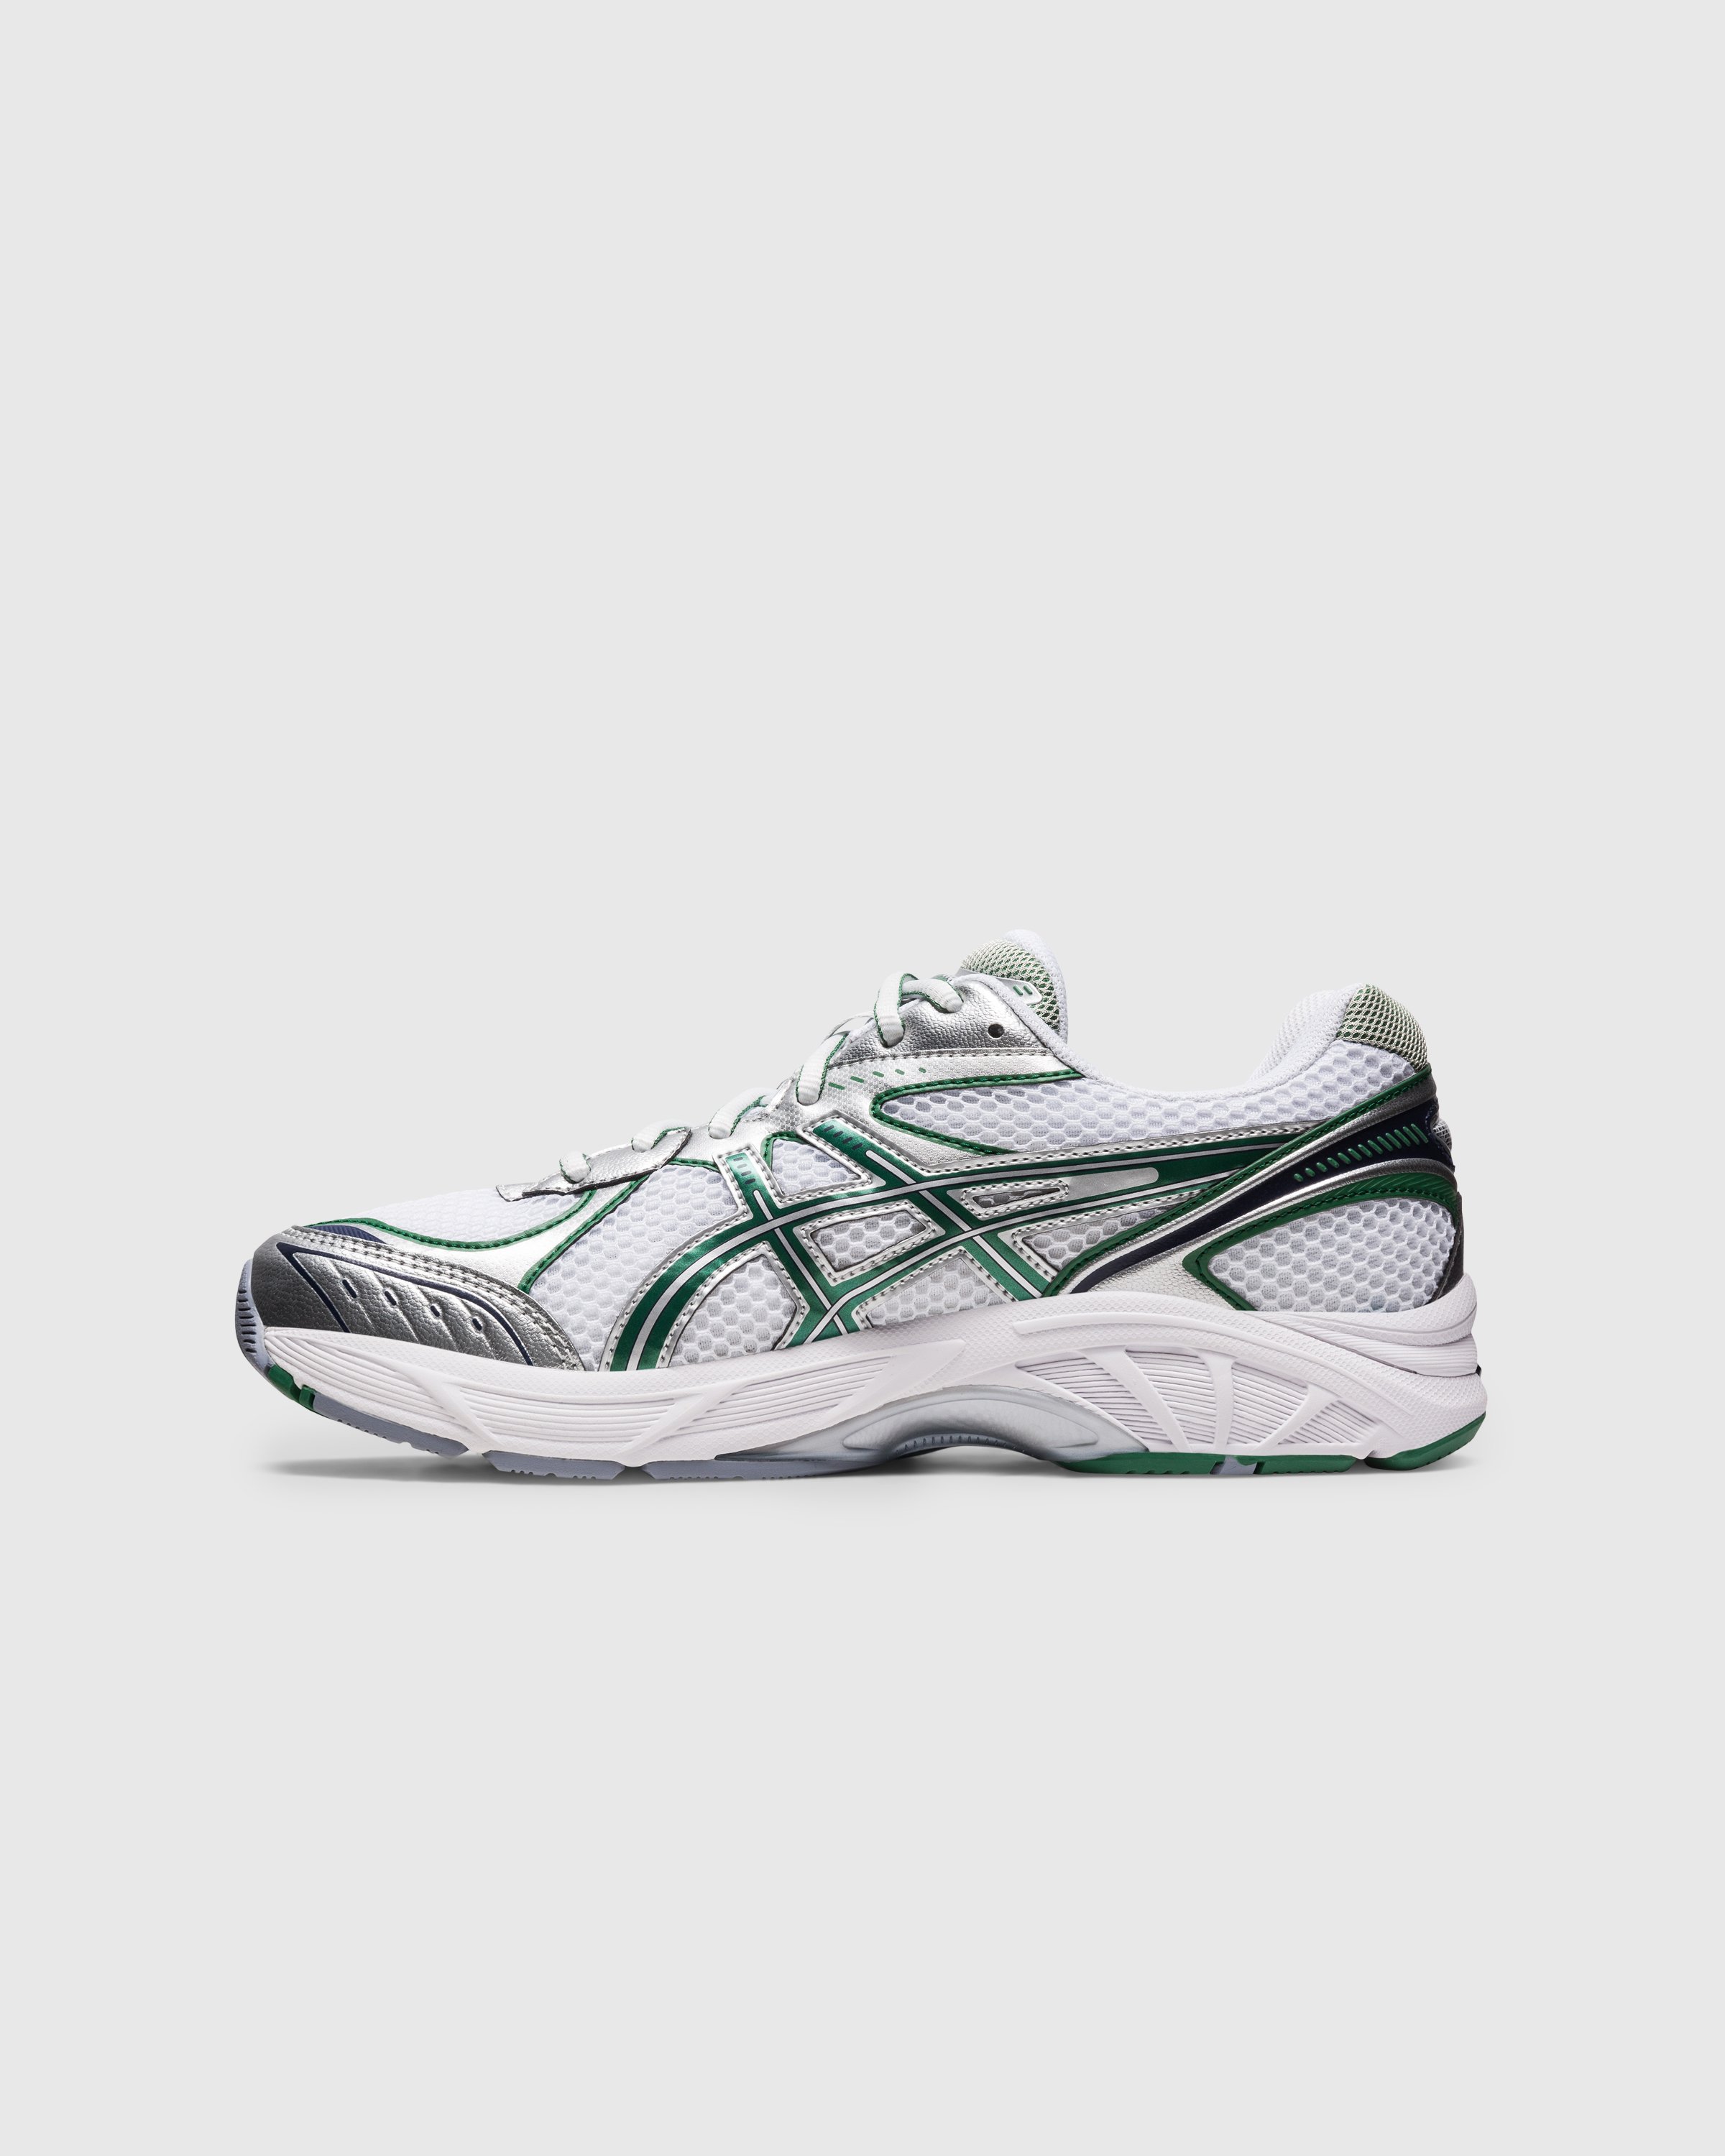 asics - GT-2160 White/Shamrock Green - Footwear - Multi - Image 2